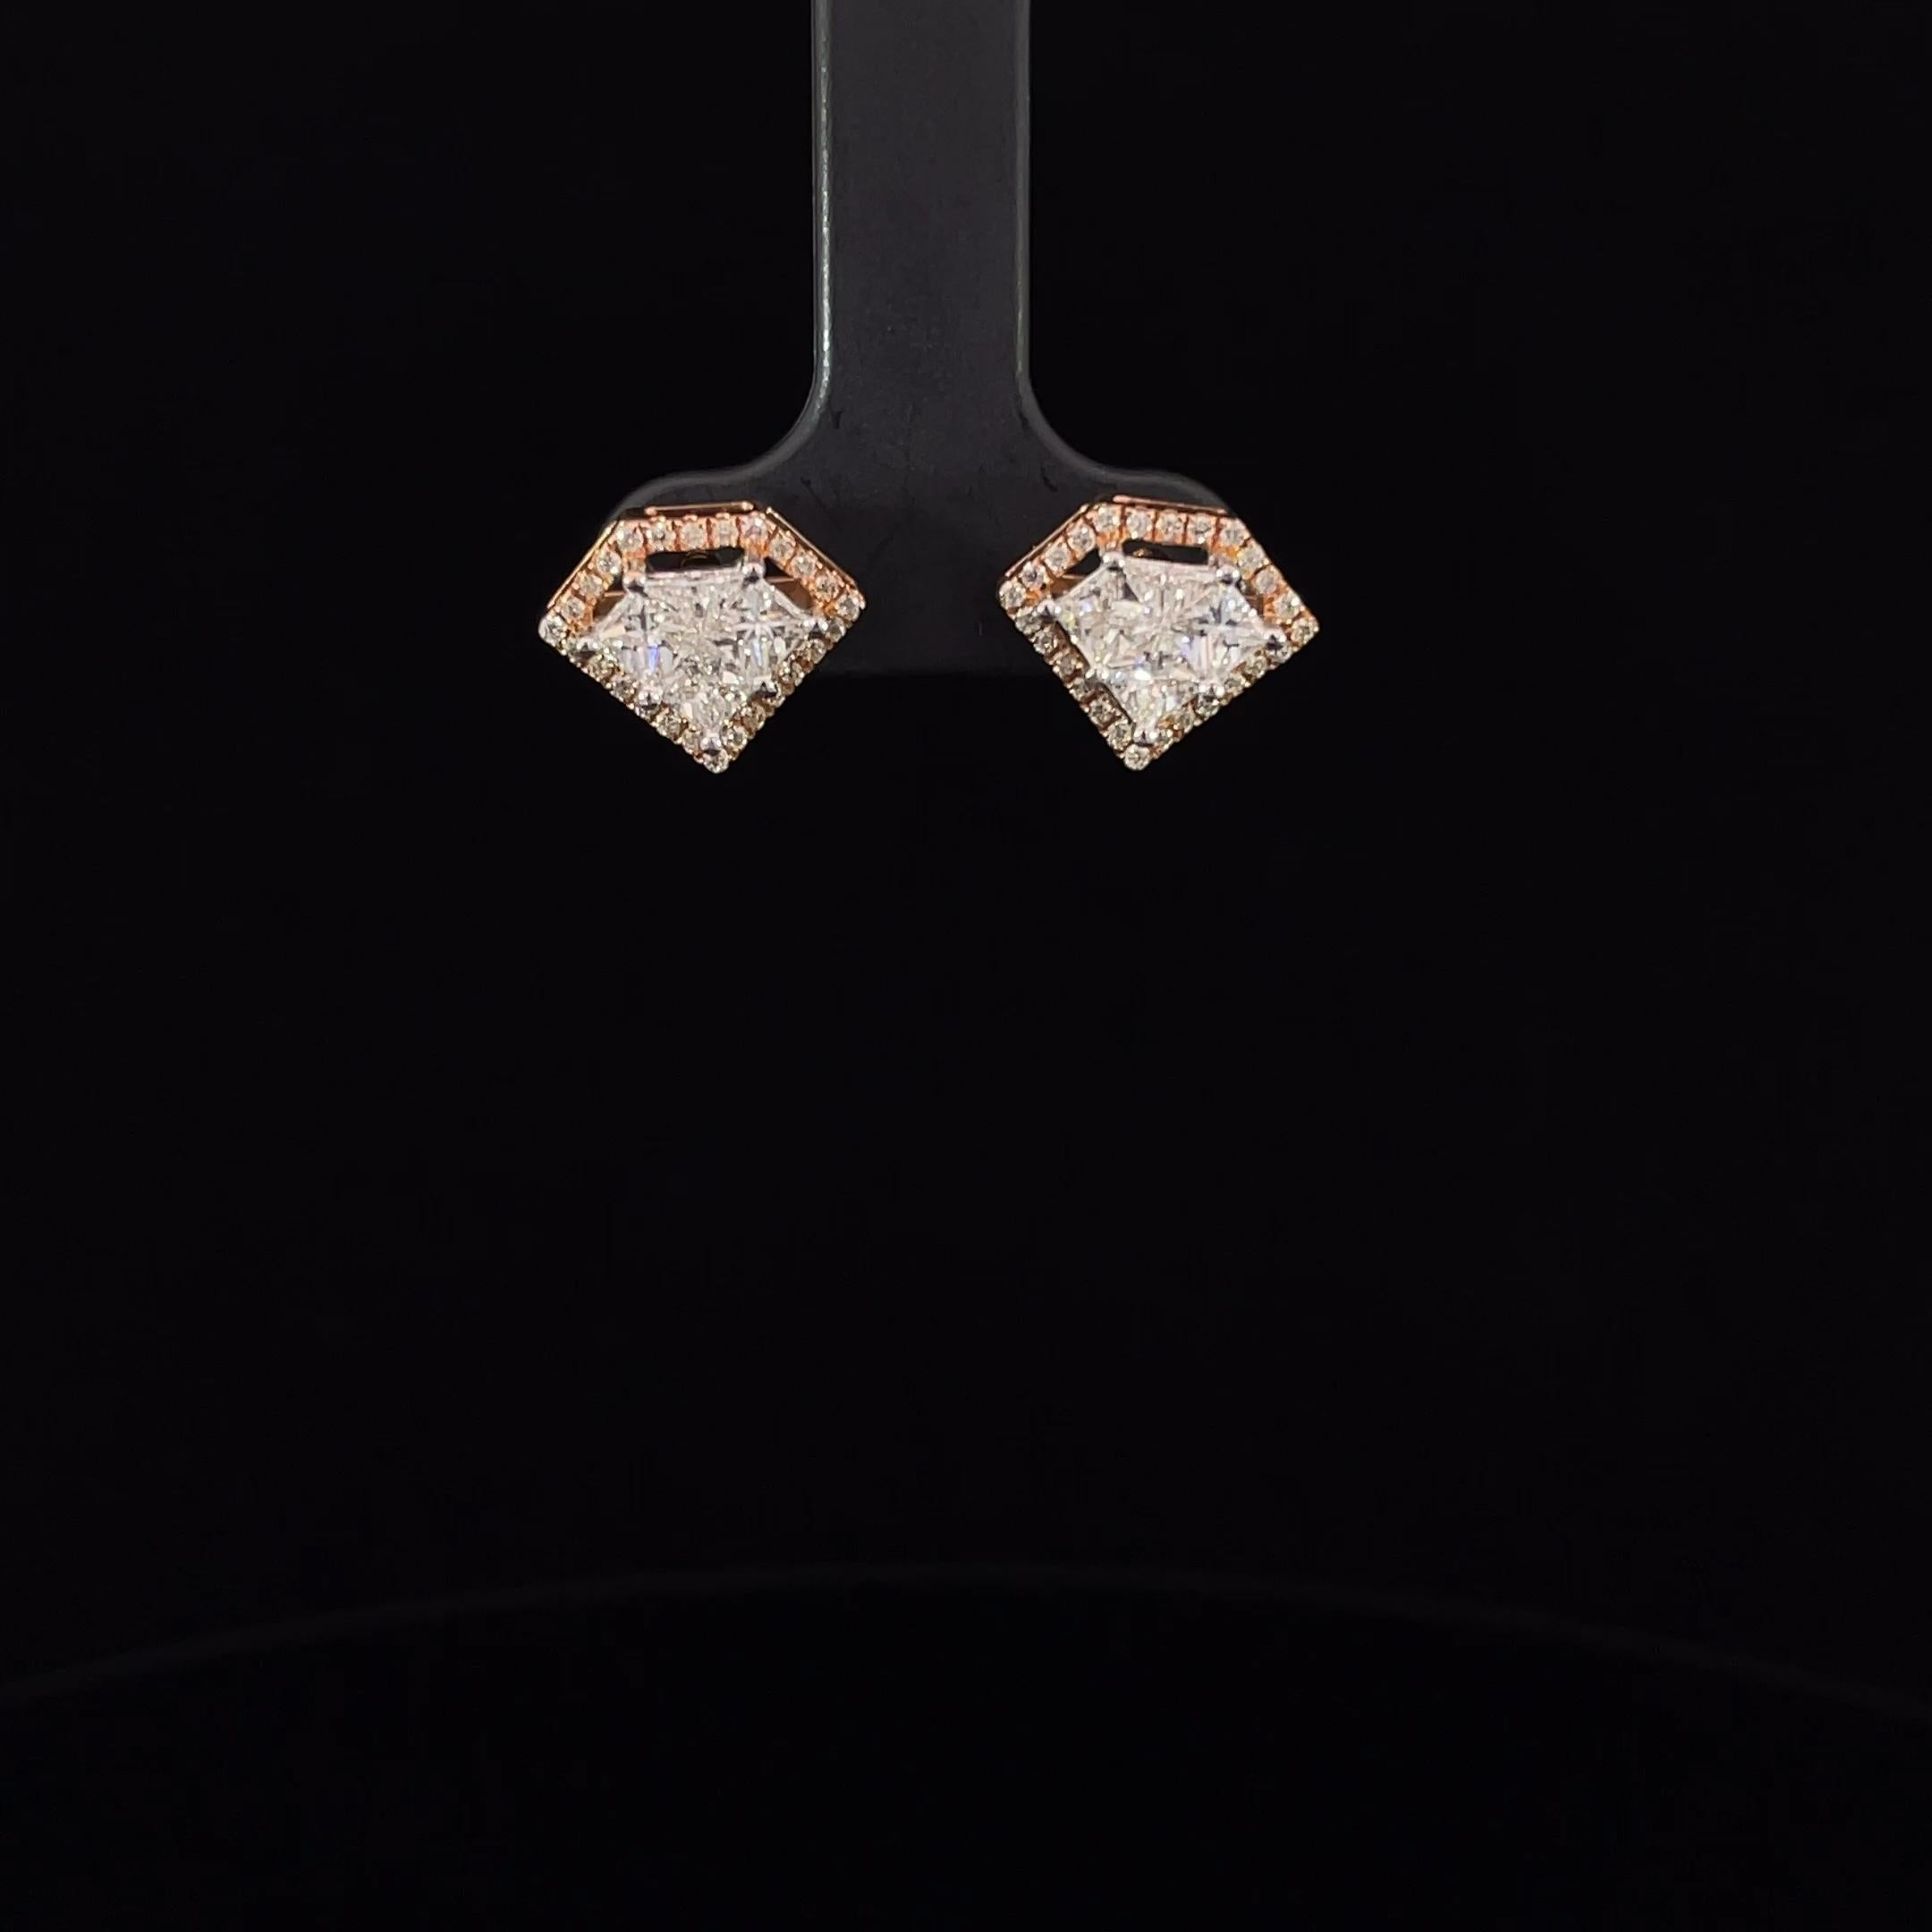 Voici notre Eleg en forme de diamant, une incarnation éblouissante de l'élégance moderne et de la sophistication. Ces boucles d'oreilles sont ornées d'un diamant central de taille ronde et brillante, pesant 0,2 carat, entouré d'un diamant de taille